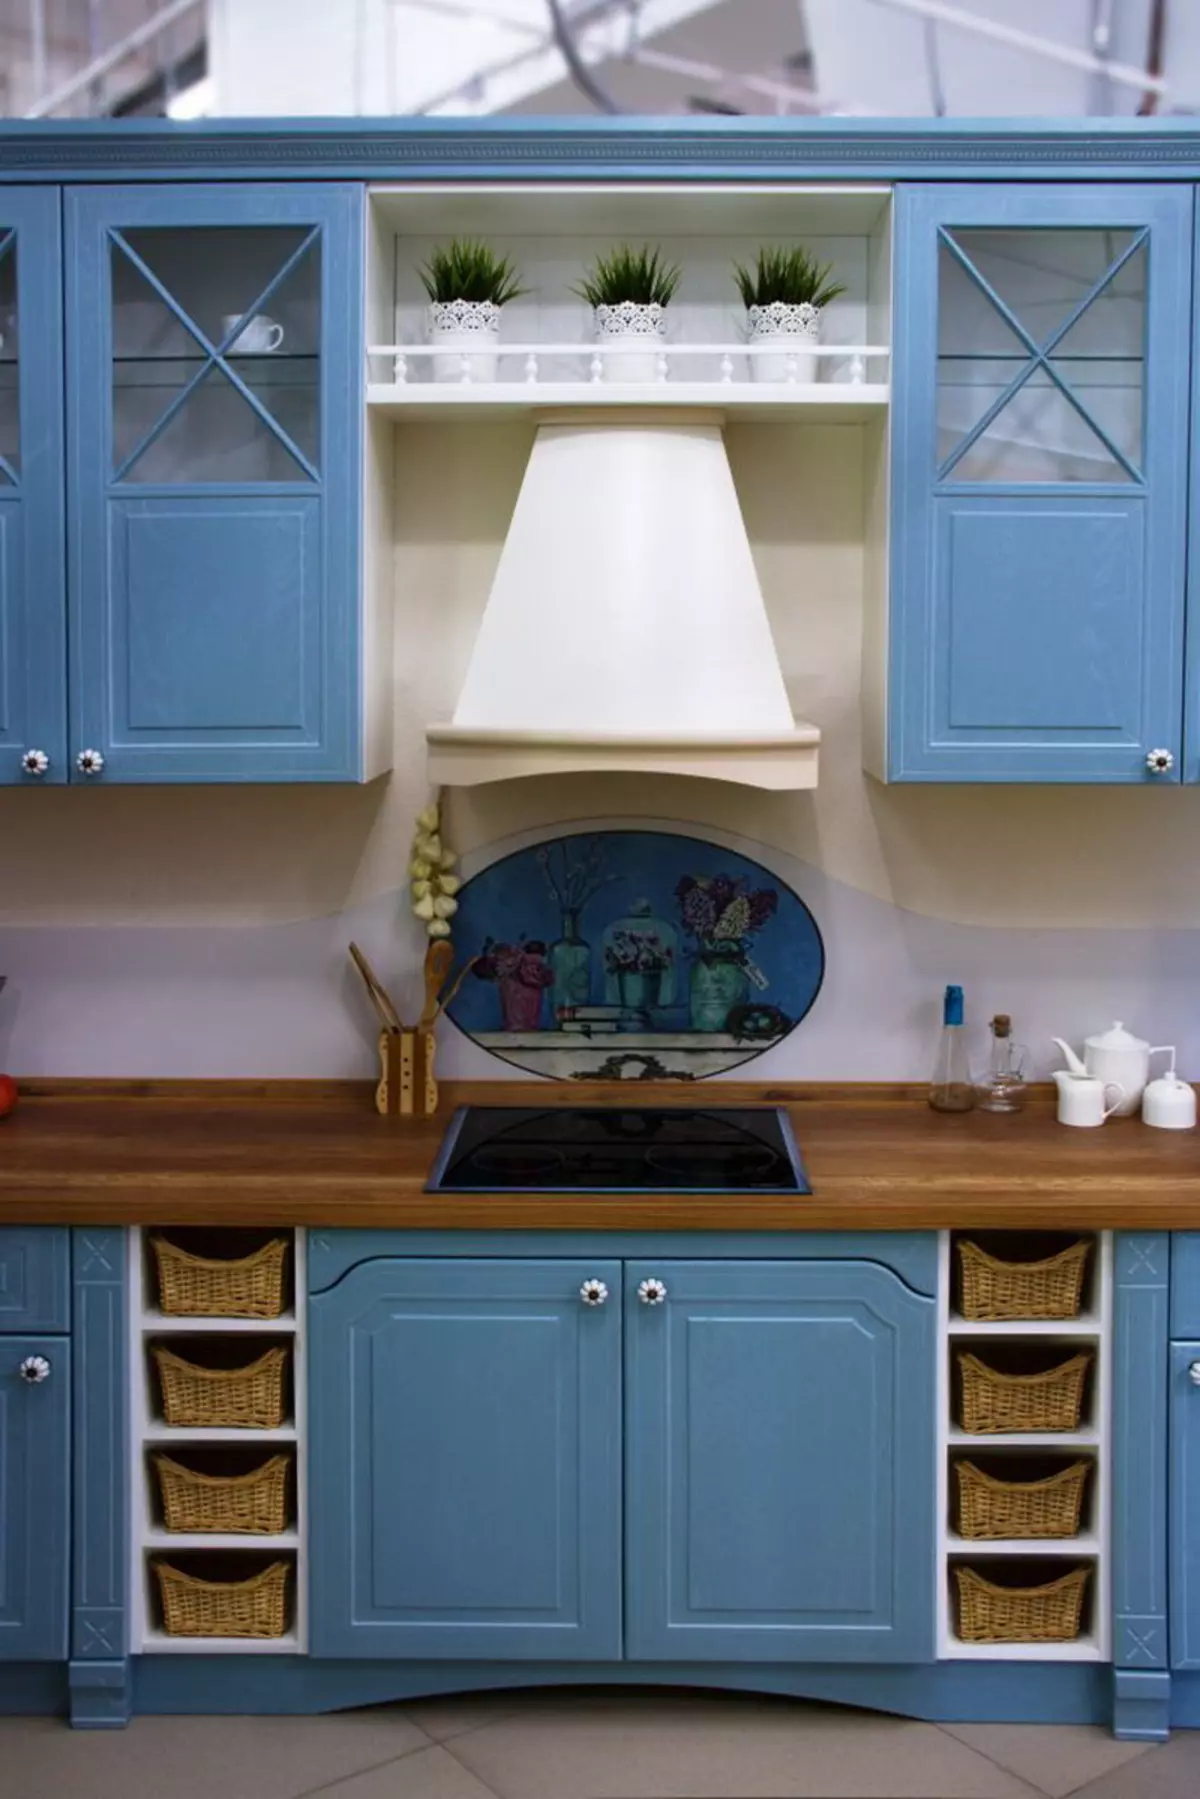 藍廚房（82張照片）：在藍色廚房套裝內部合併哪種顏色？淺藍色和深藍色色調的廚房設計 9555_63